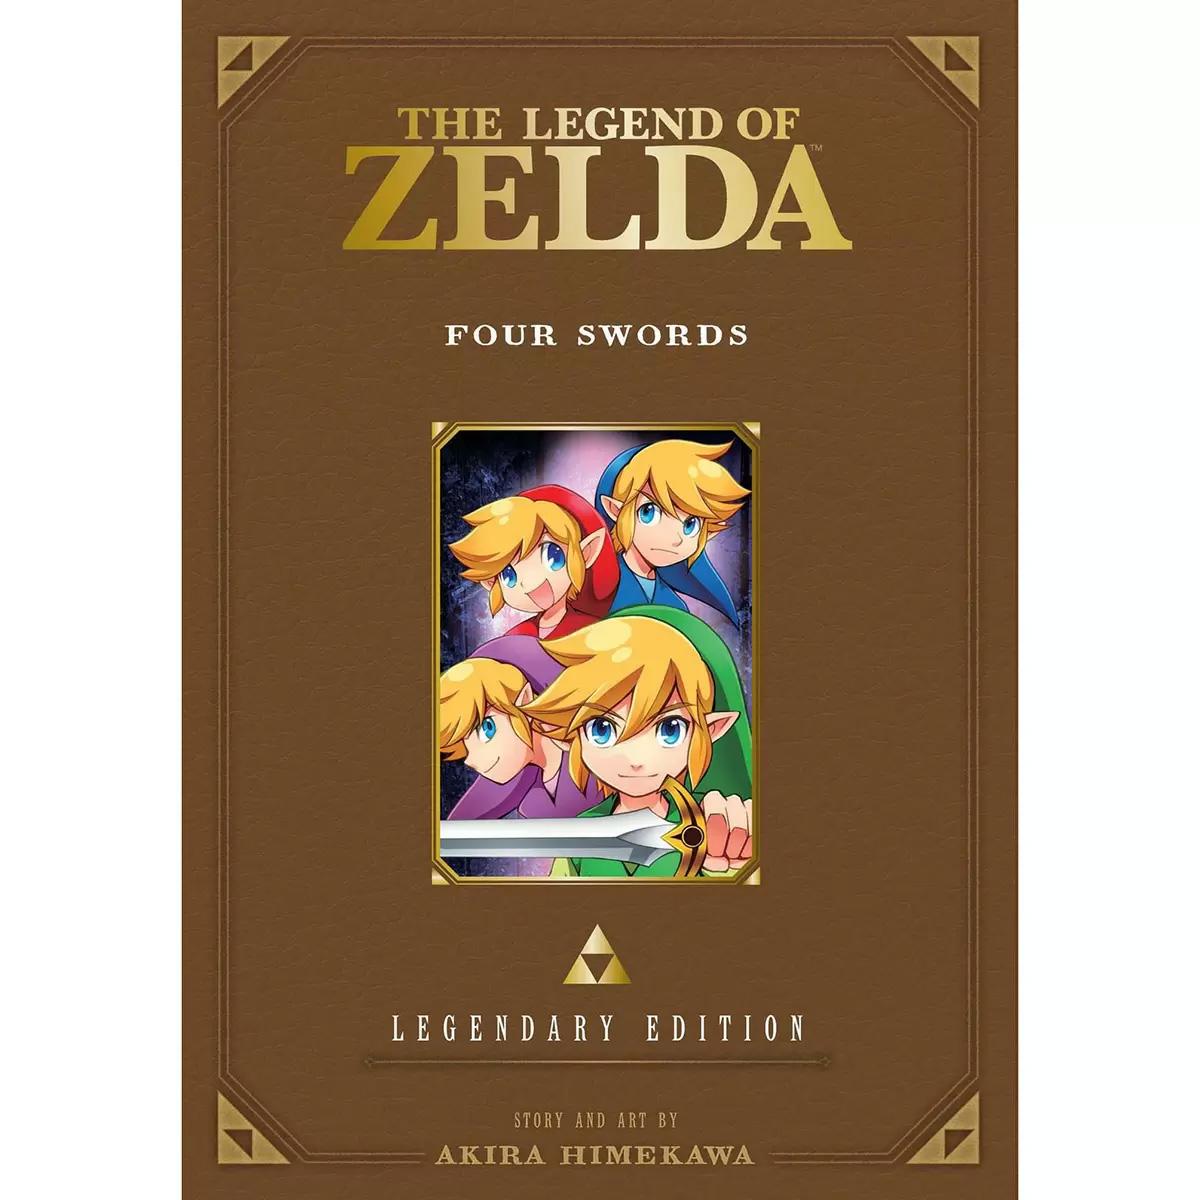 The Legend of Zelda Four Swords Legendary Edition Book for $10.10